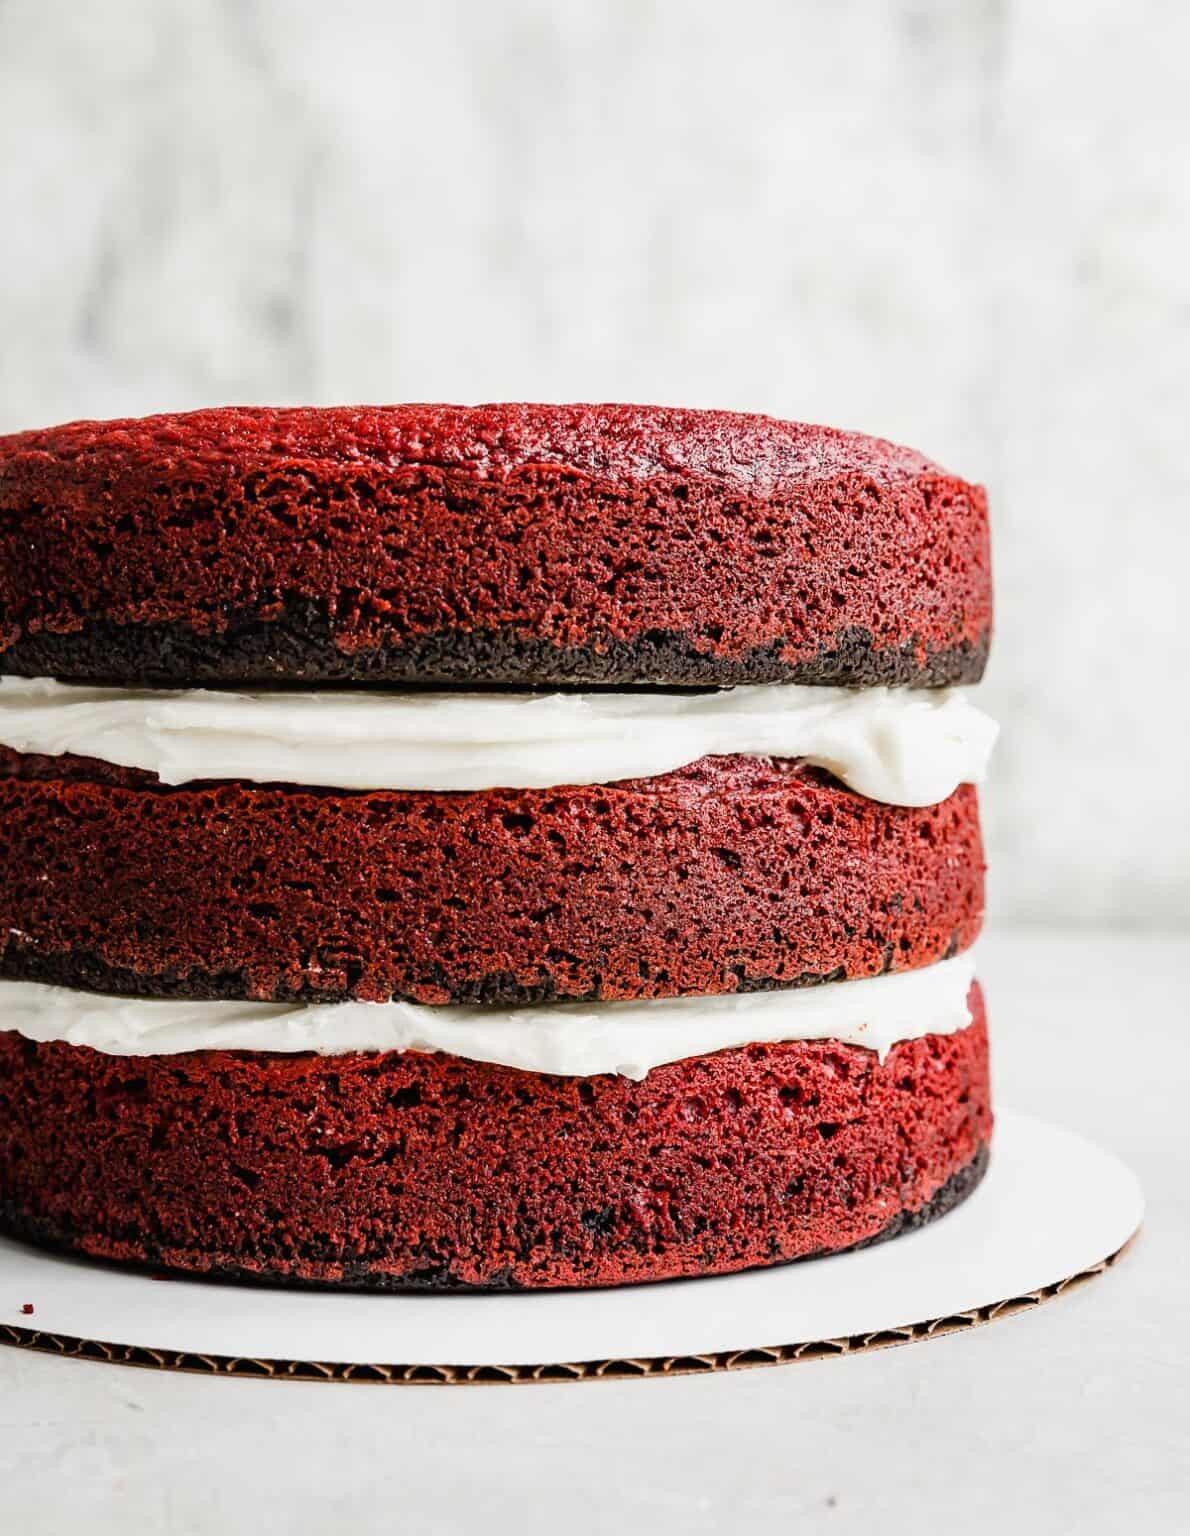 Oreo Red Velvet Cake Salt Baker